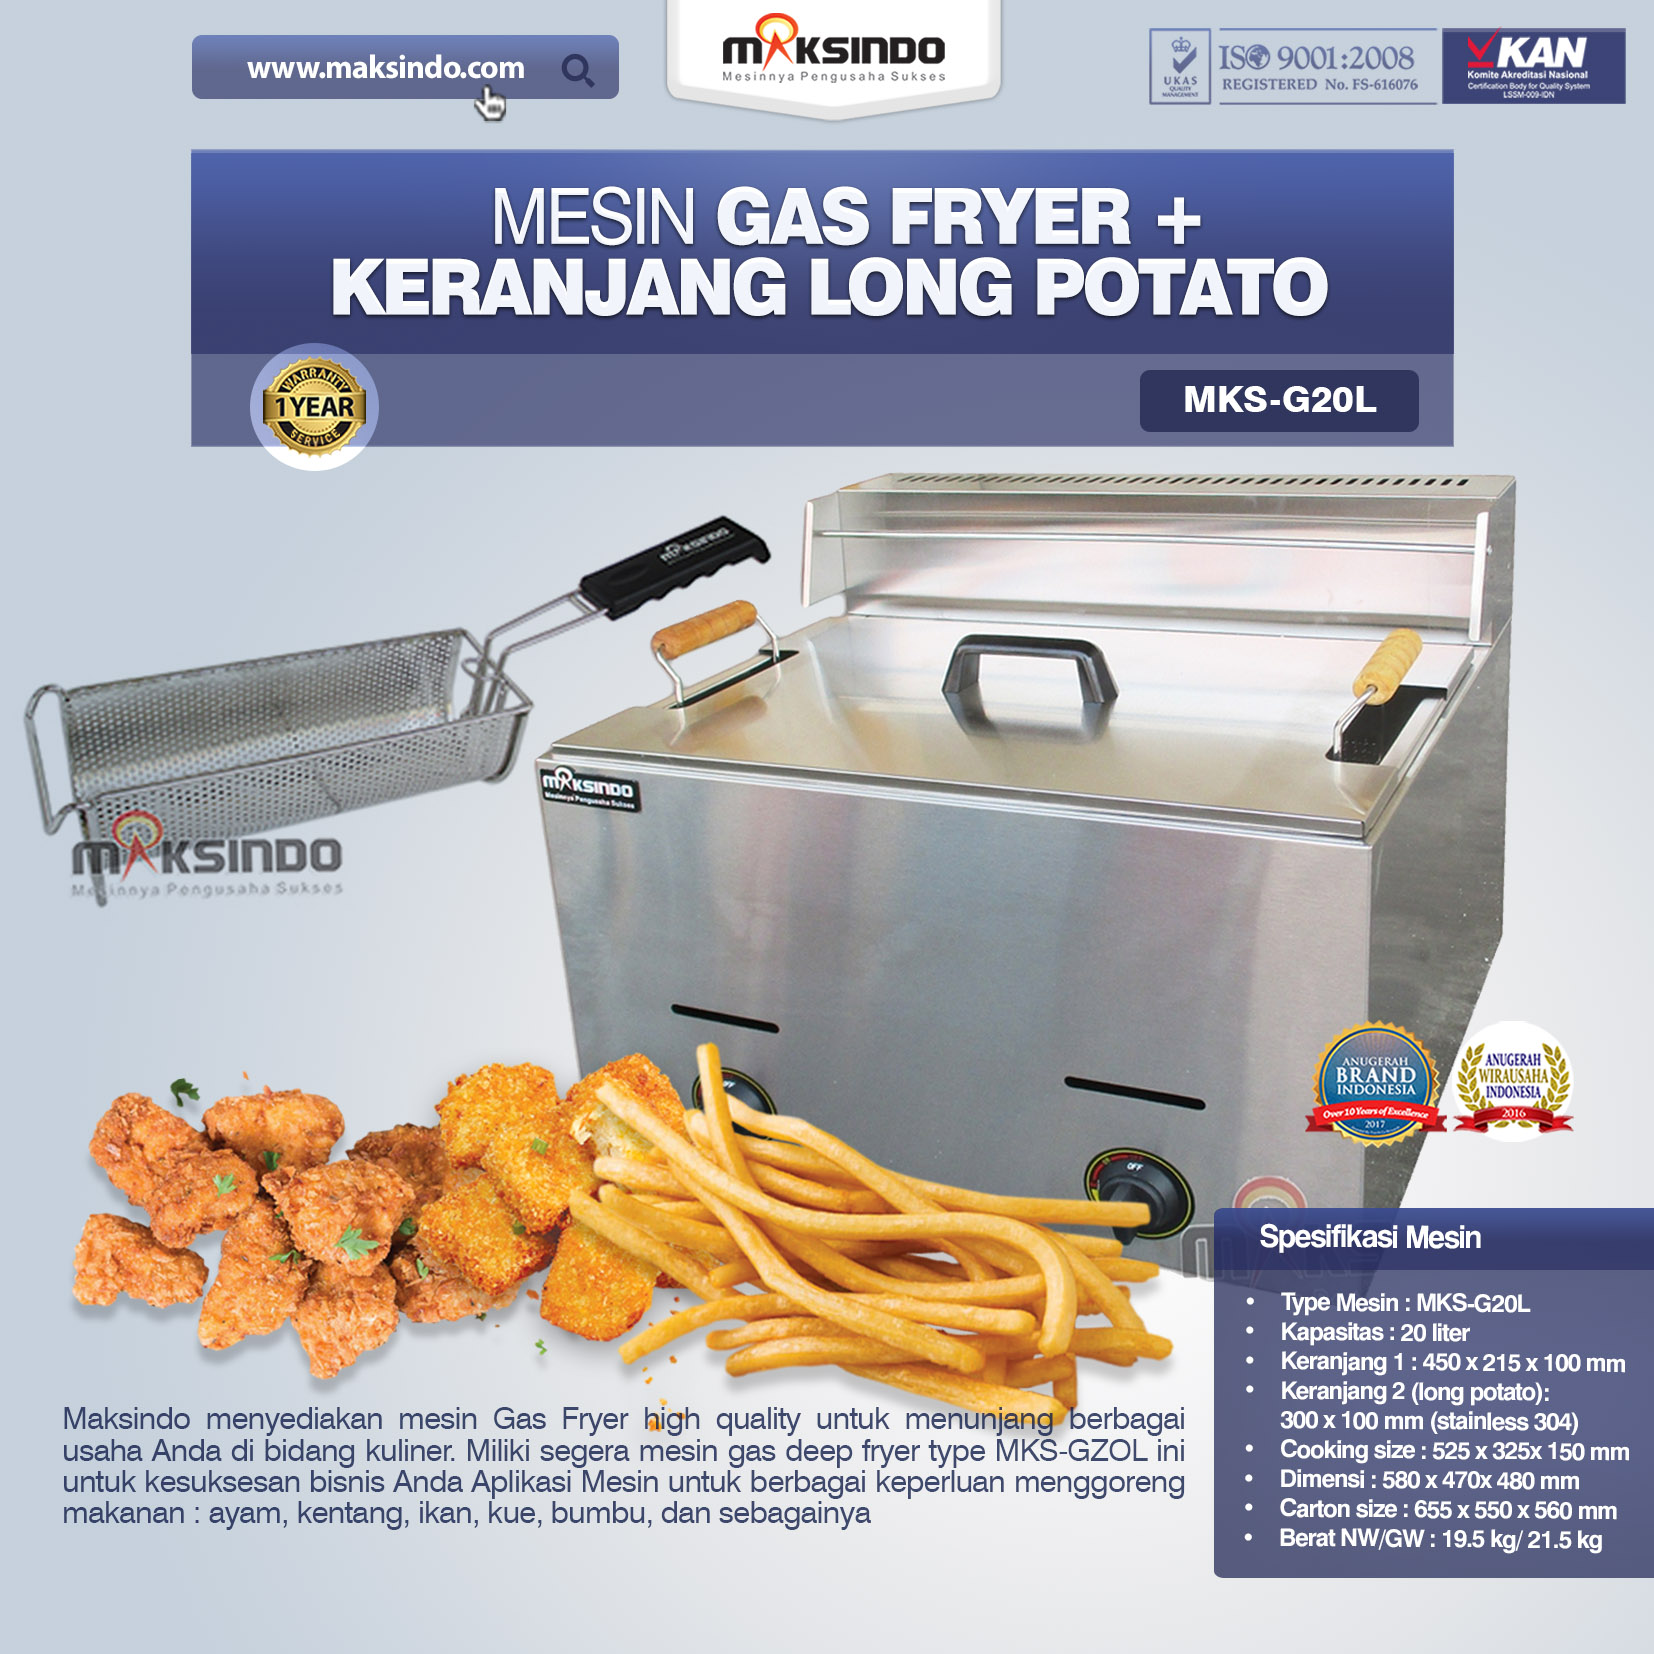 Jual Mesin Gas Fryer MKS-G20L + Keranjang di Palembang